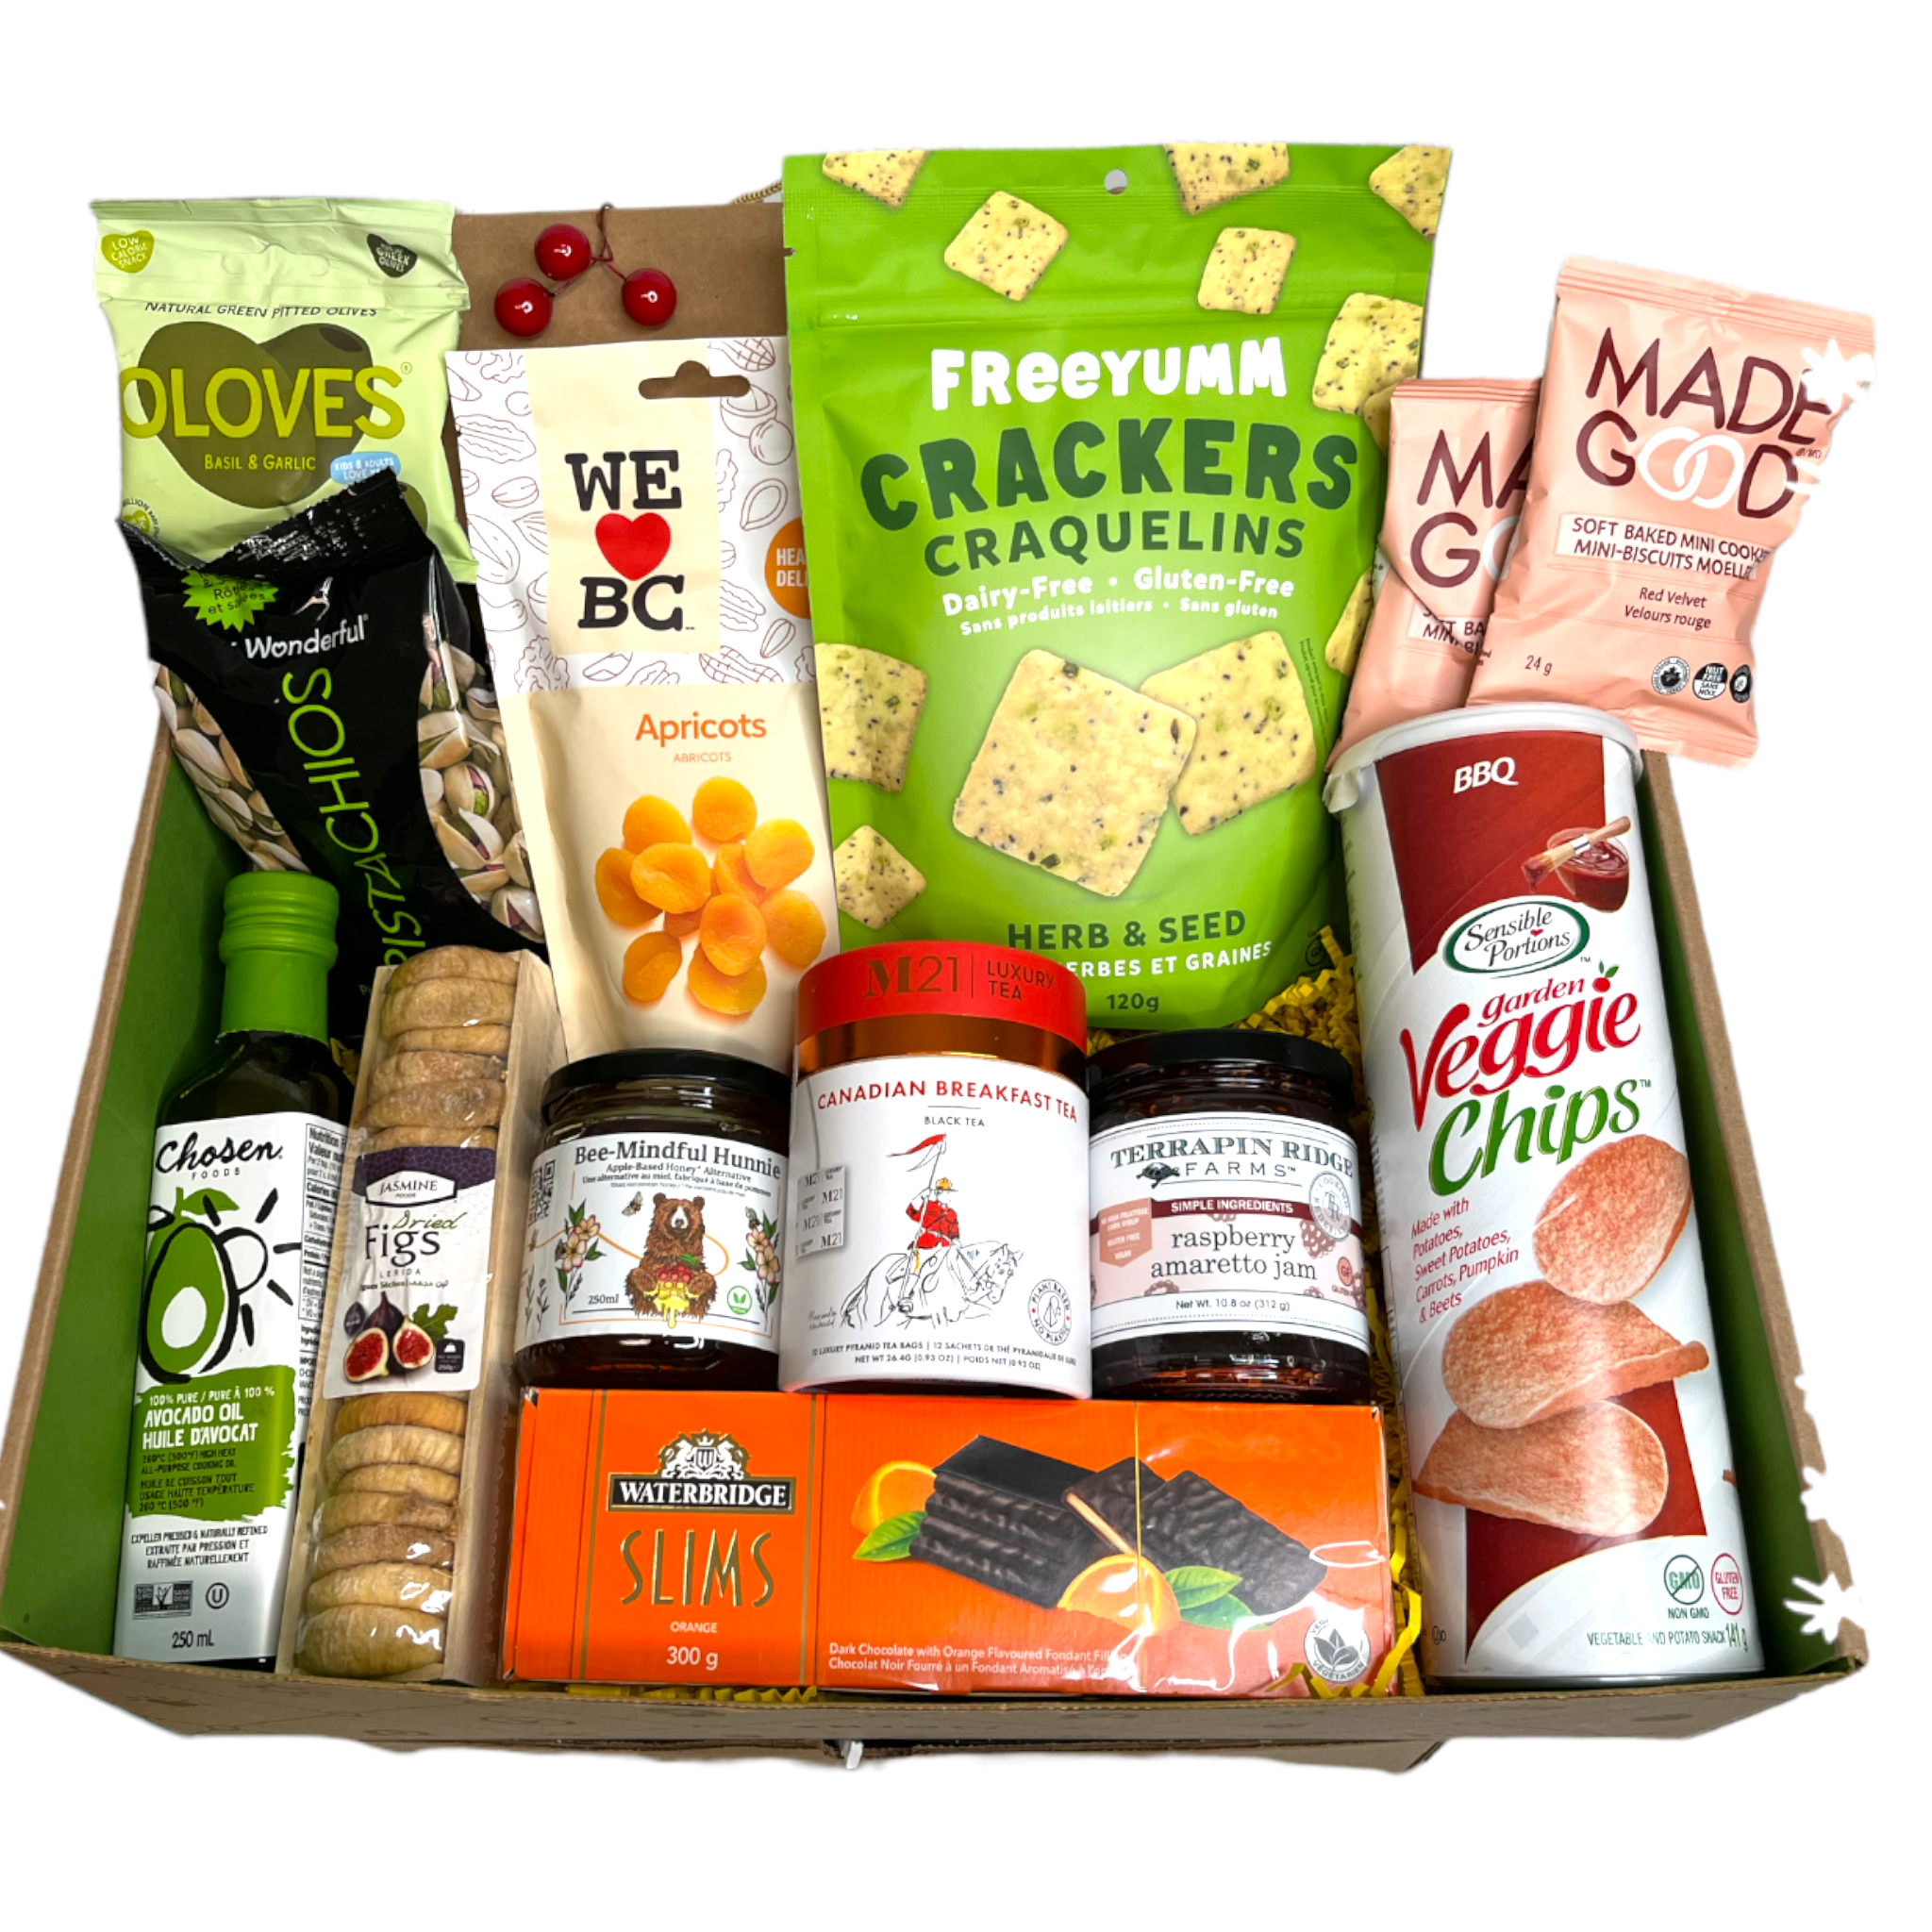 Vegan Snack in the box